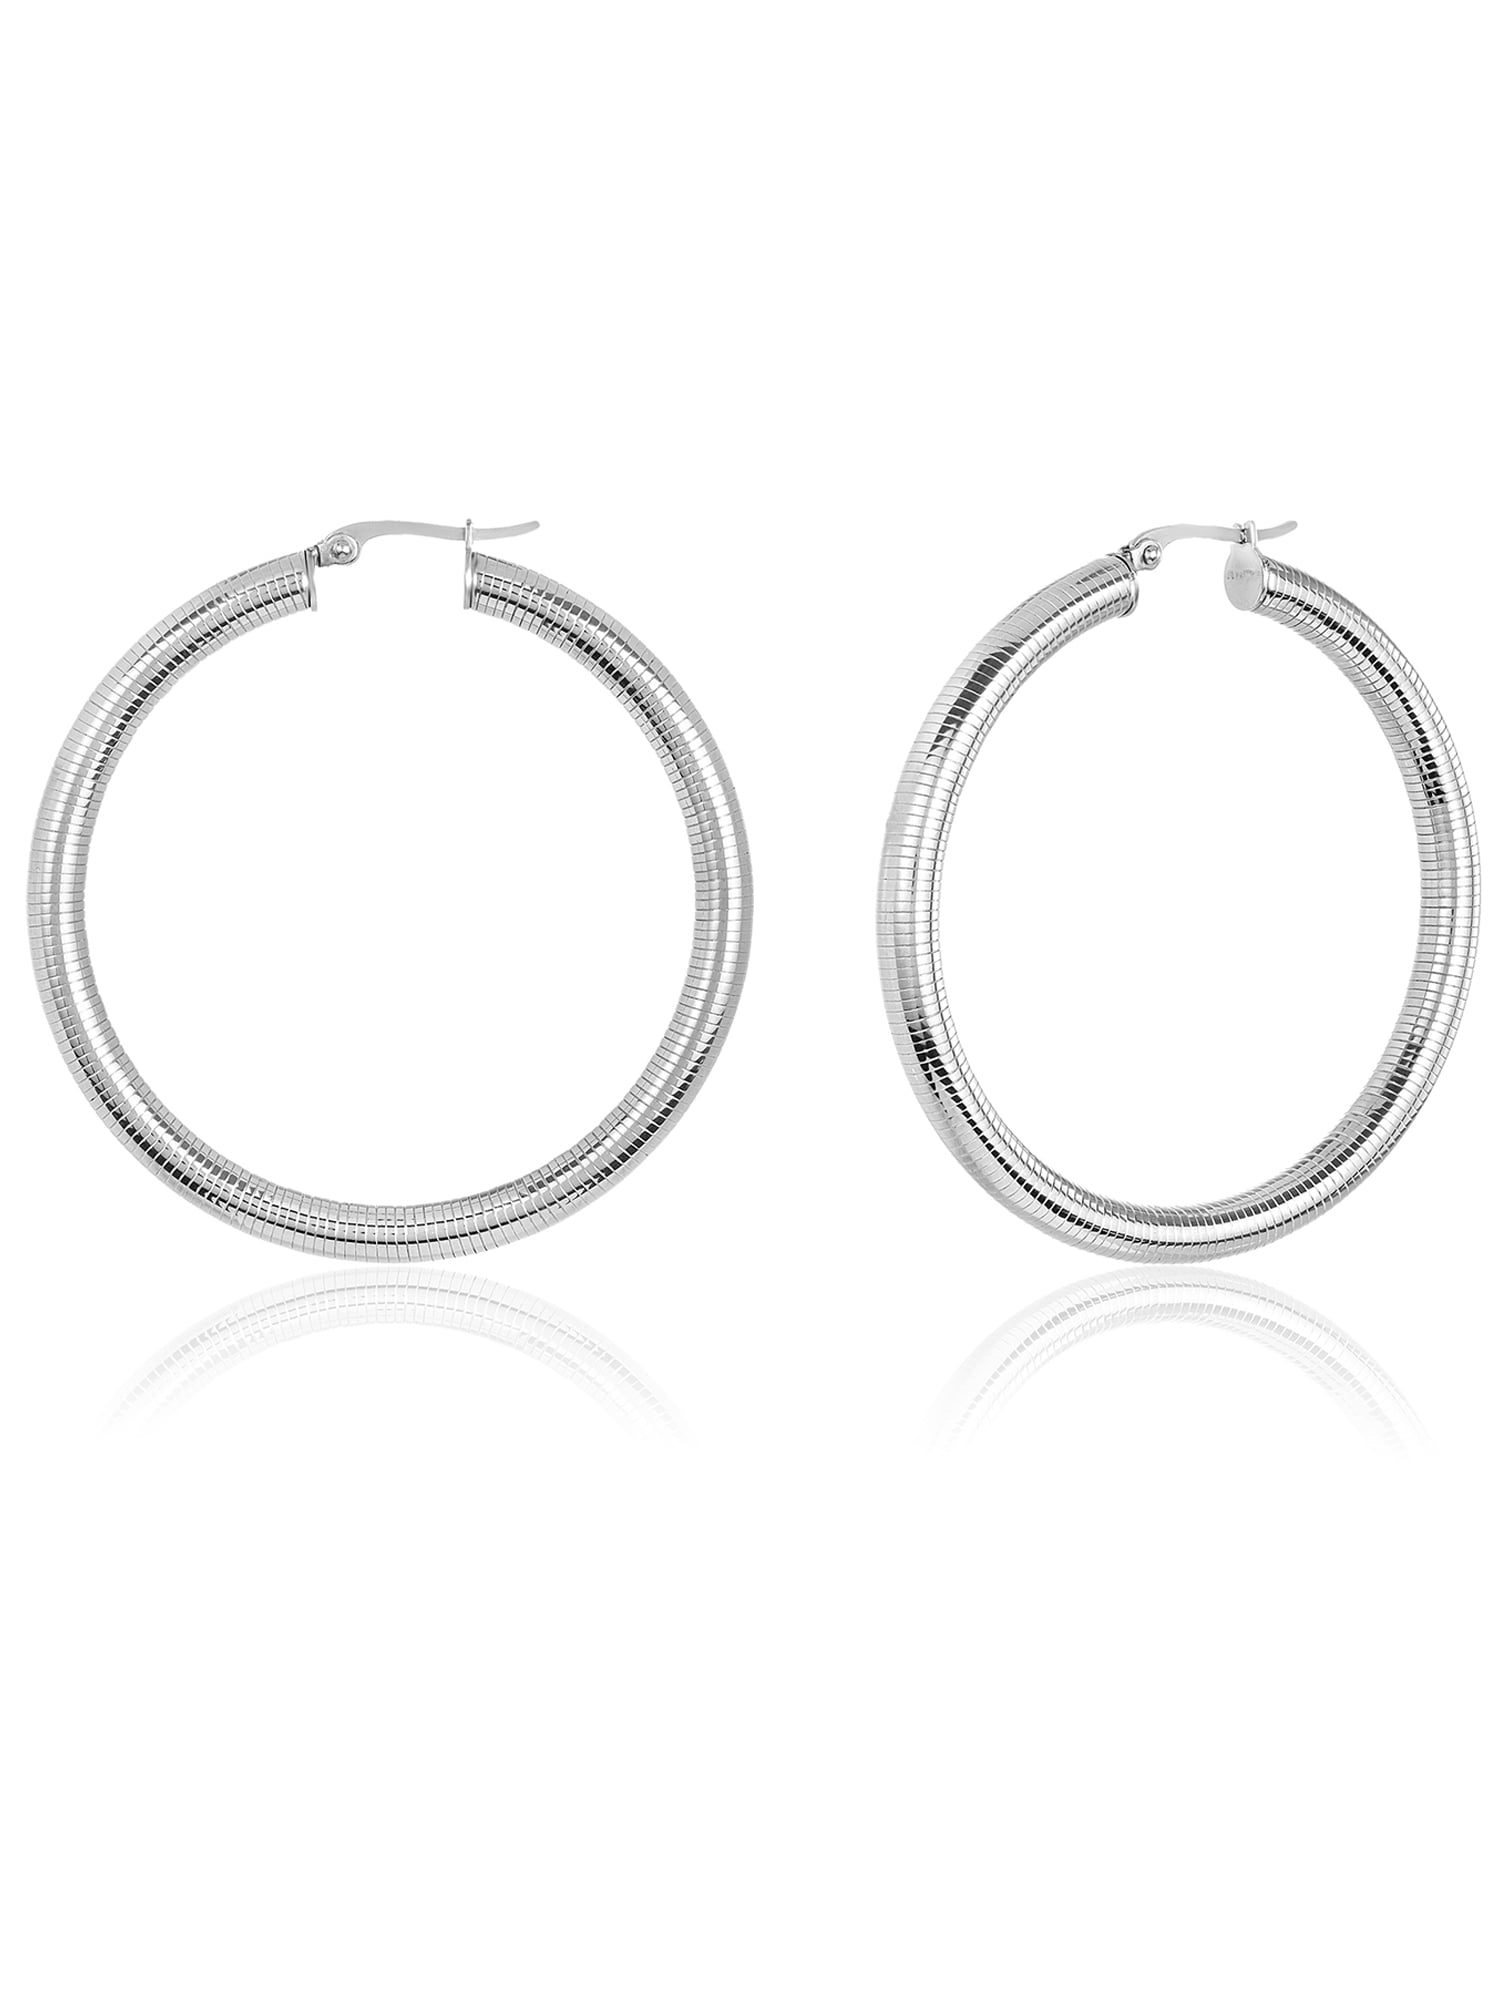 Top 190+ stainless steel hoop earrings latest